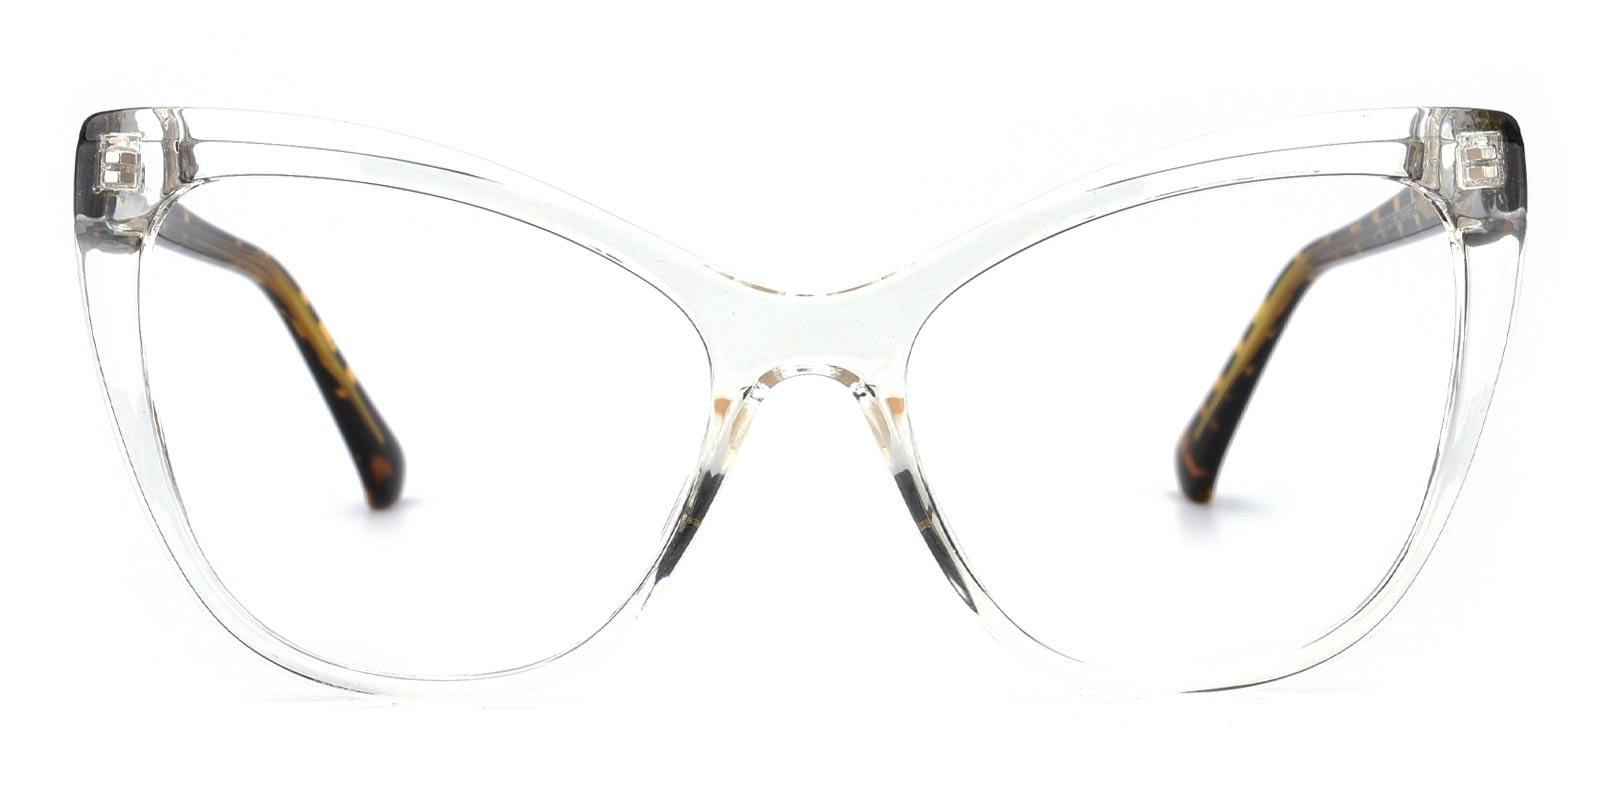 Liz-Tortoise-Cat-TR-Eyeglasses-detail